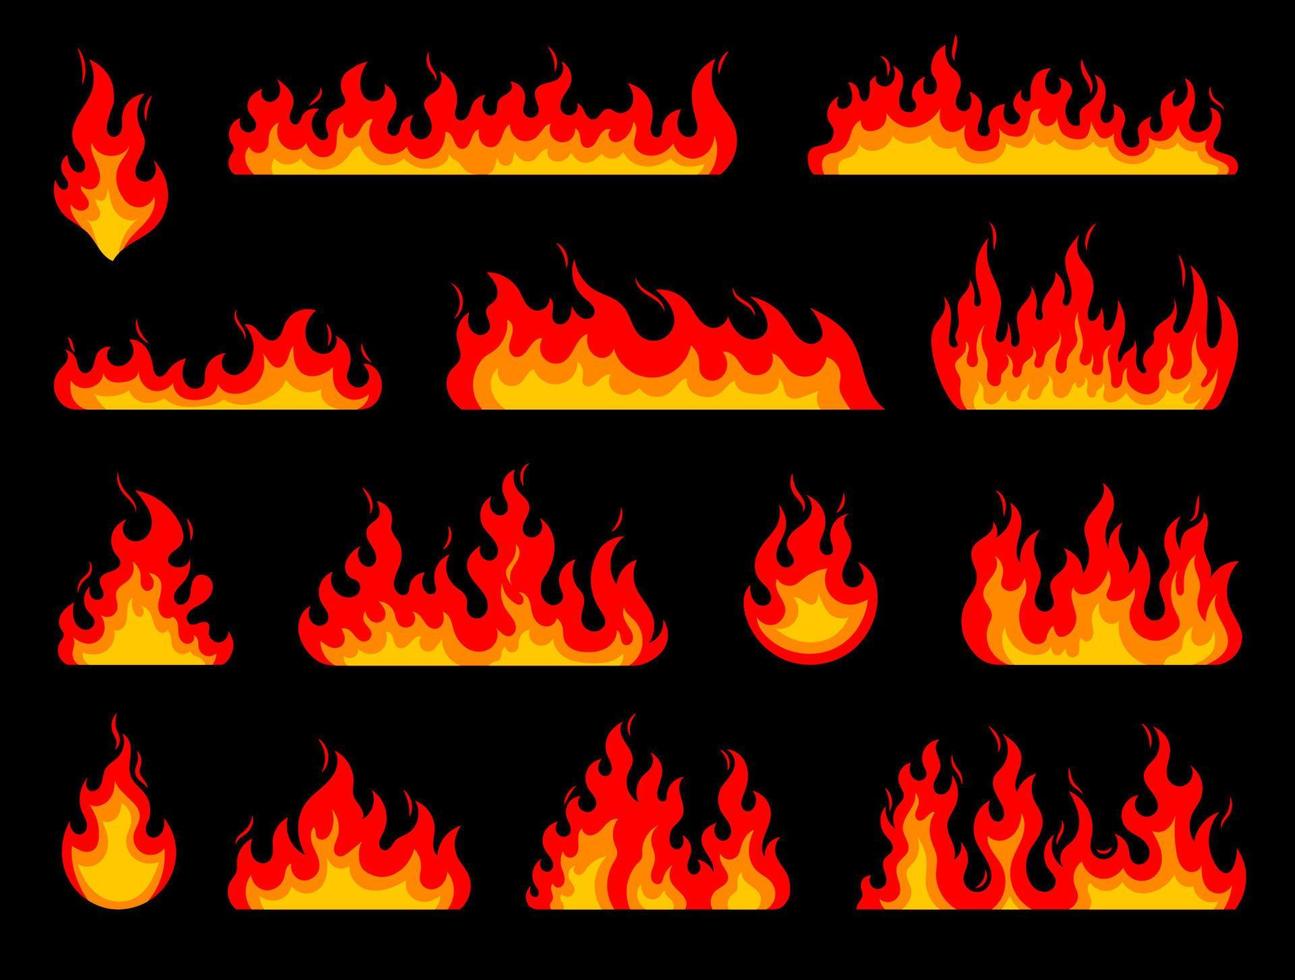 hoguera de dibujos animados, llama de fuego aislada de incendios forestales vector